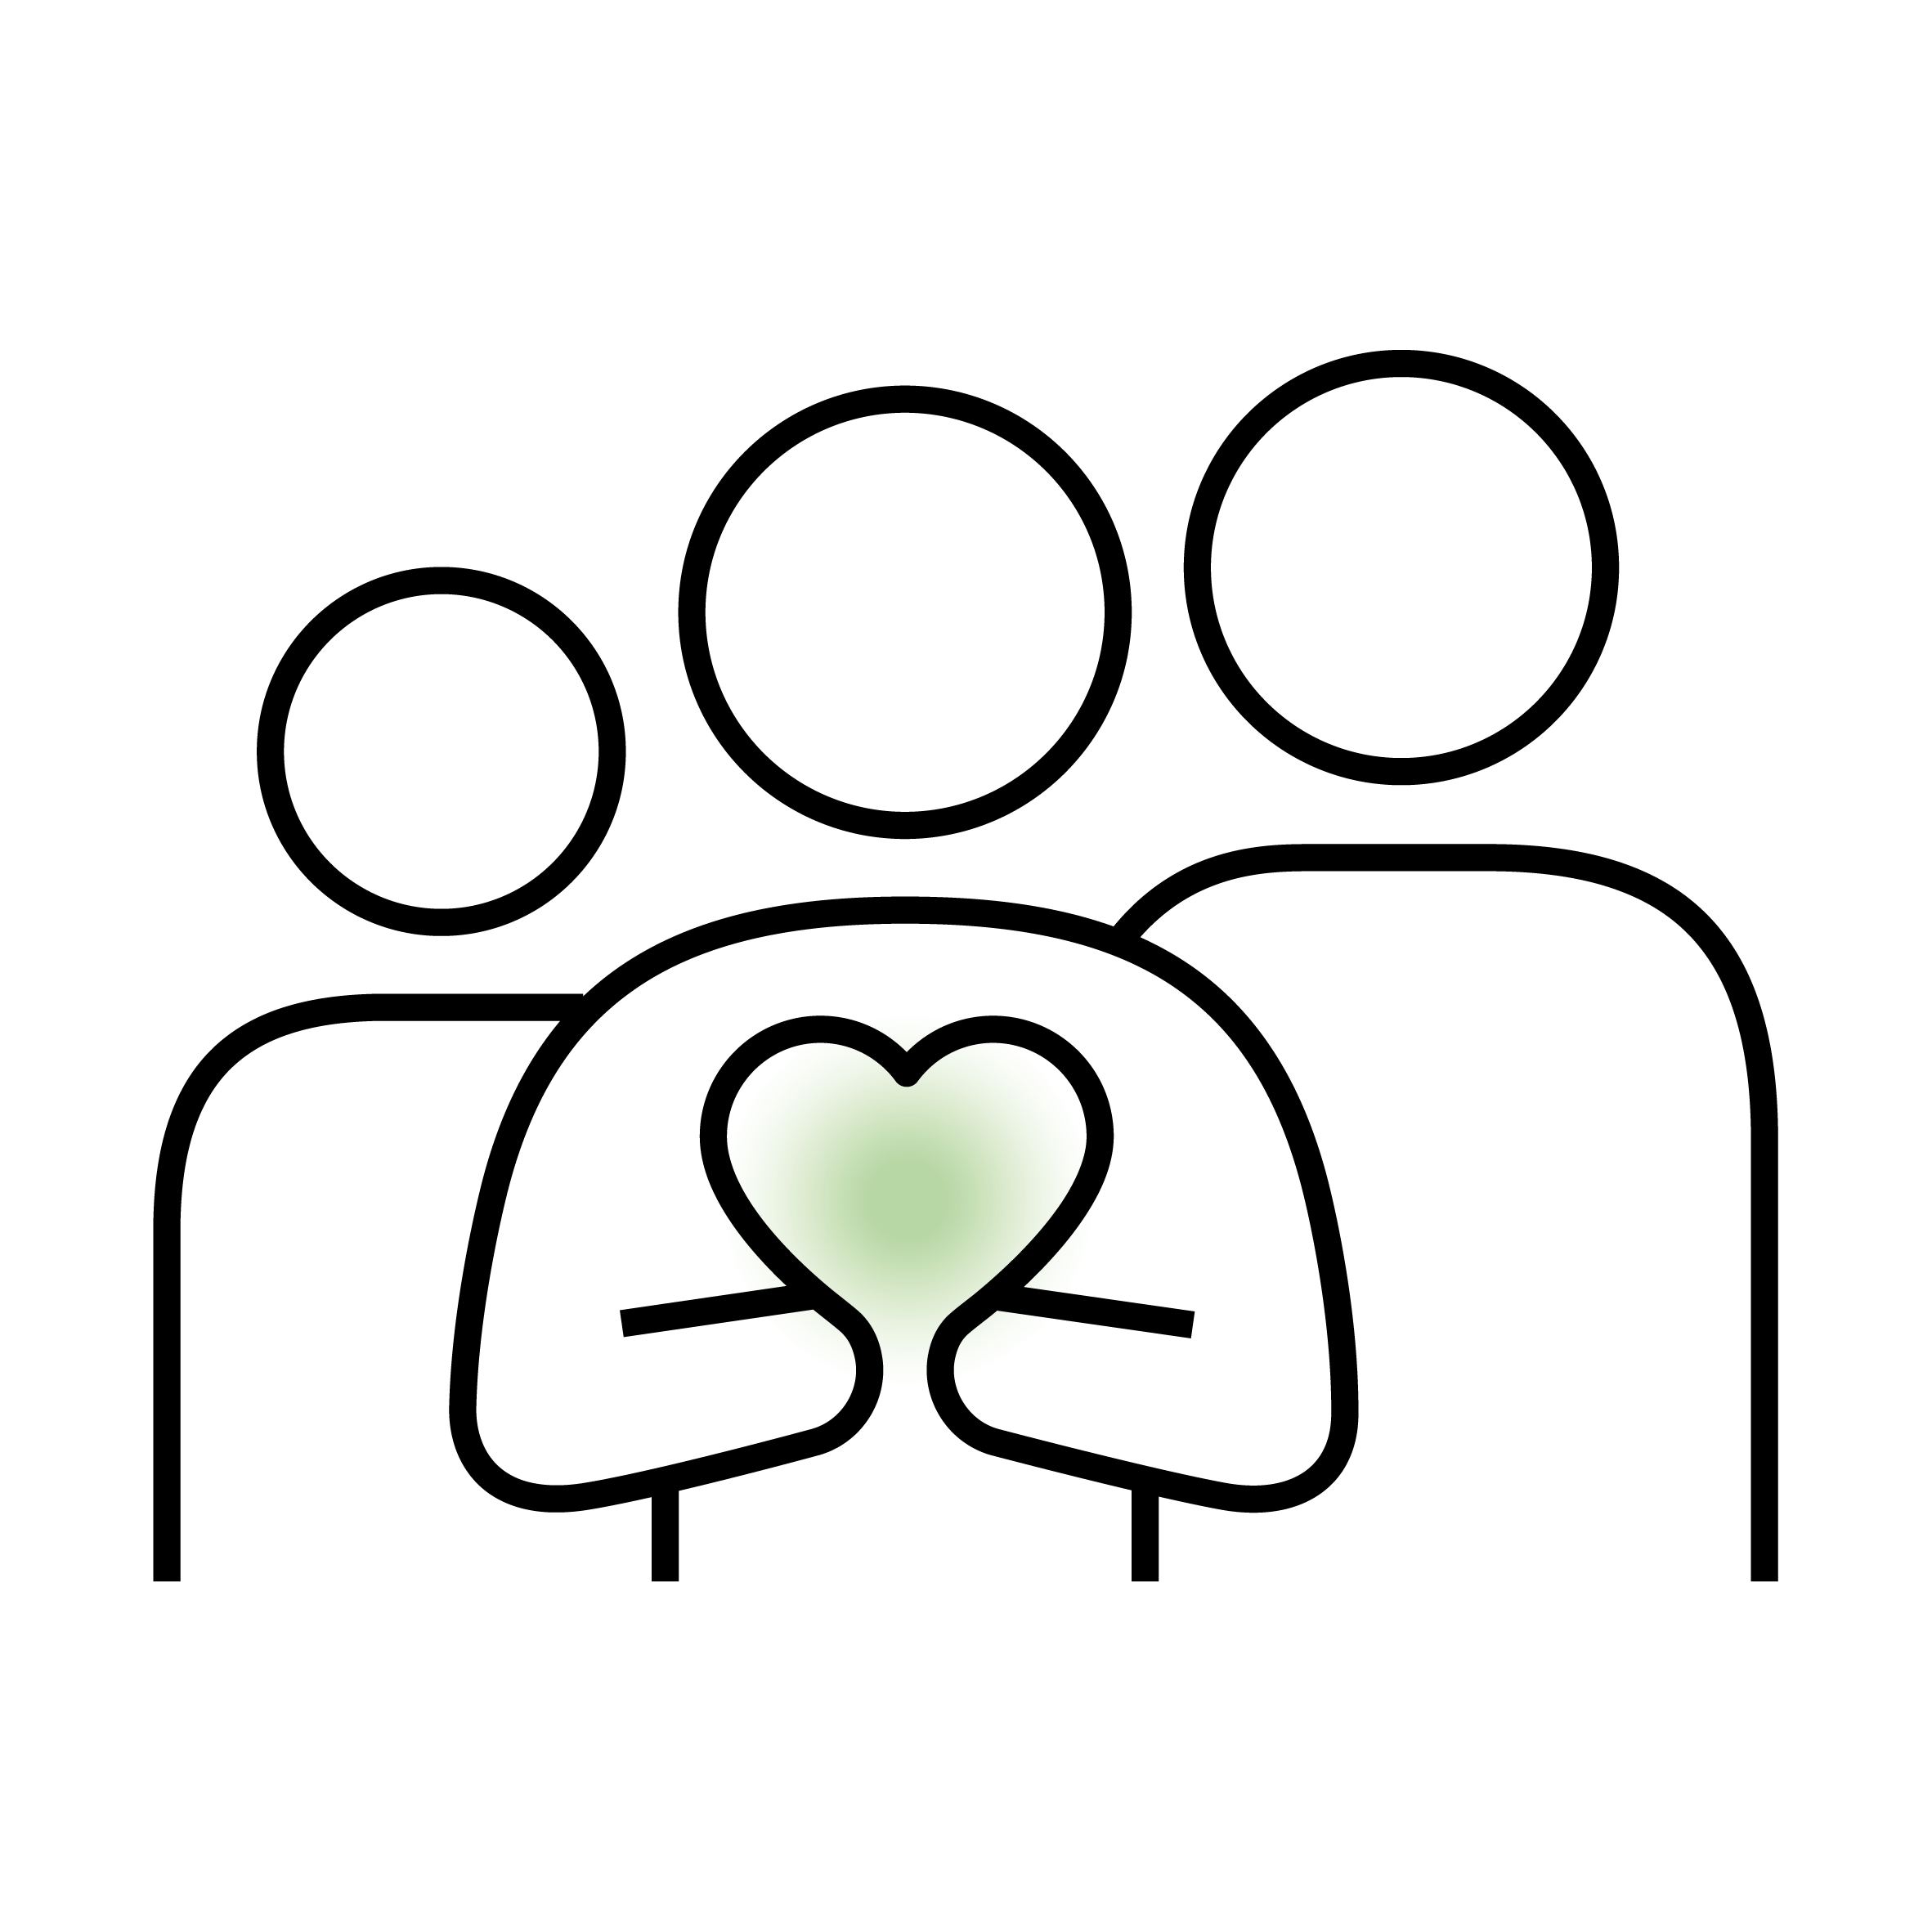 Vektorgrafik von drei stilisierten Personen mit einem Herzsymbol.